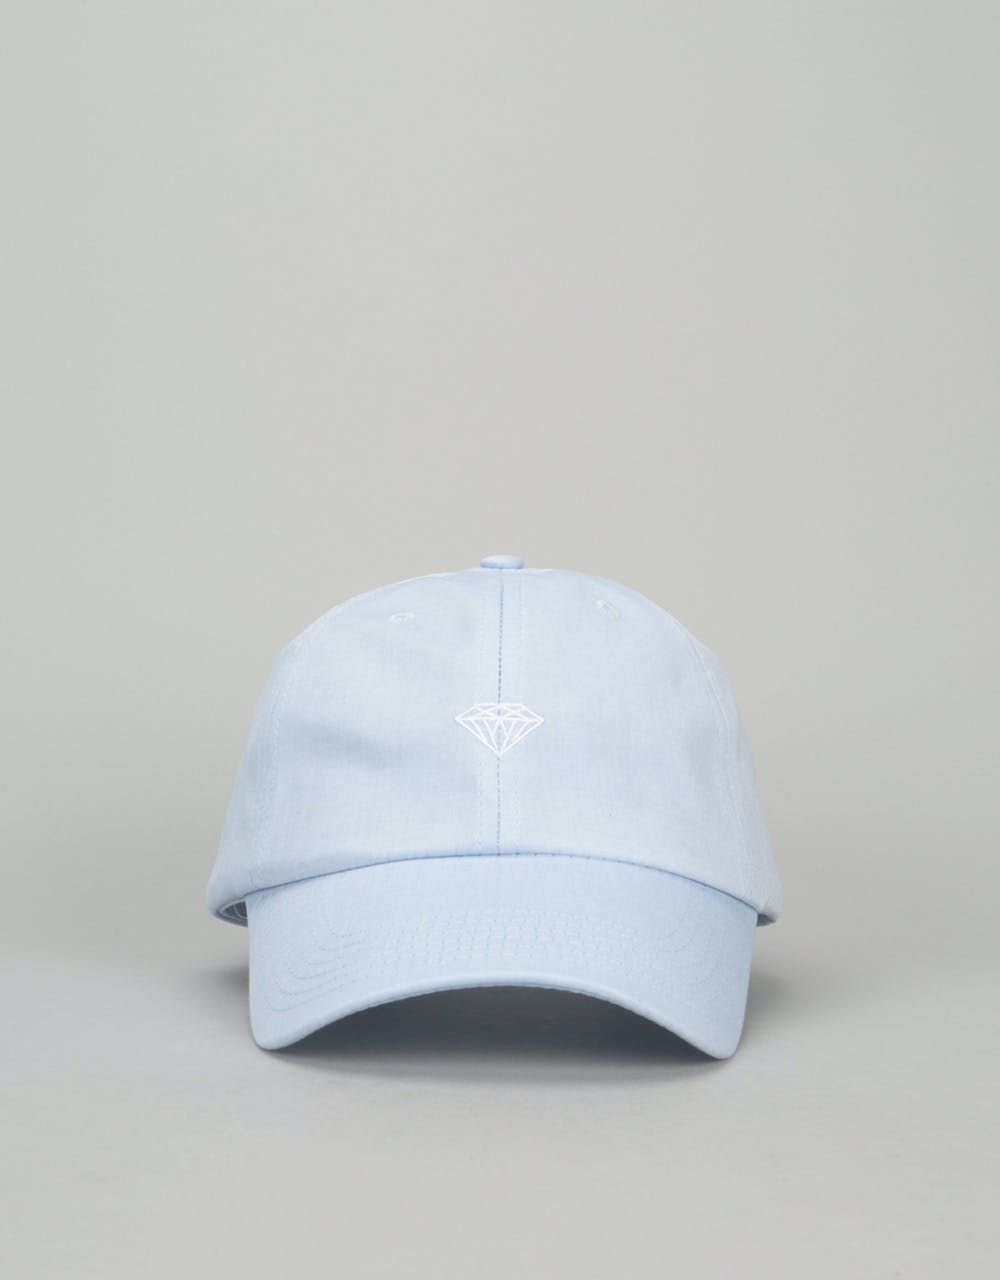 Diamond Supply Co. Micro Briliant Sports Cap - Blue